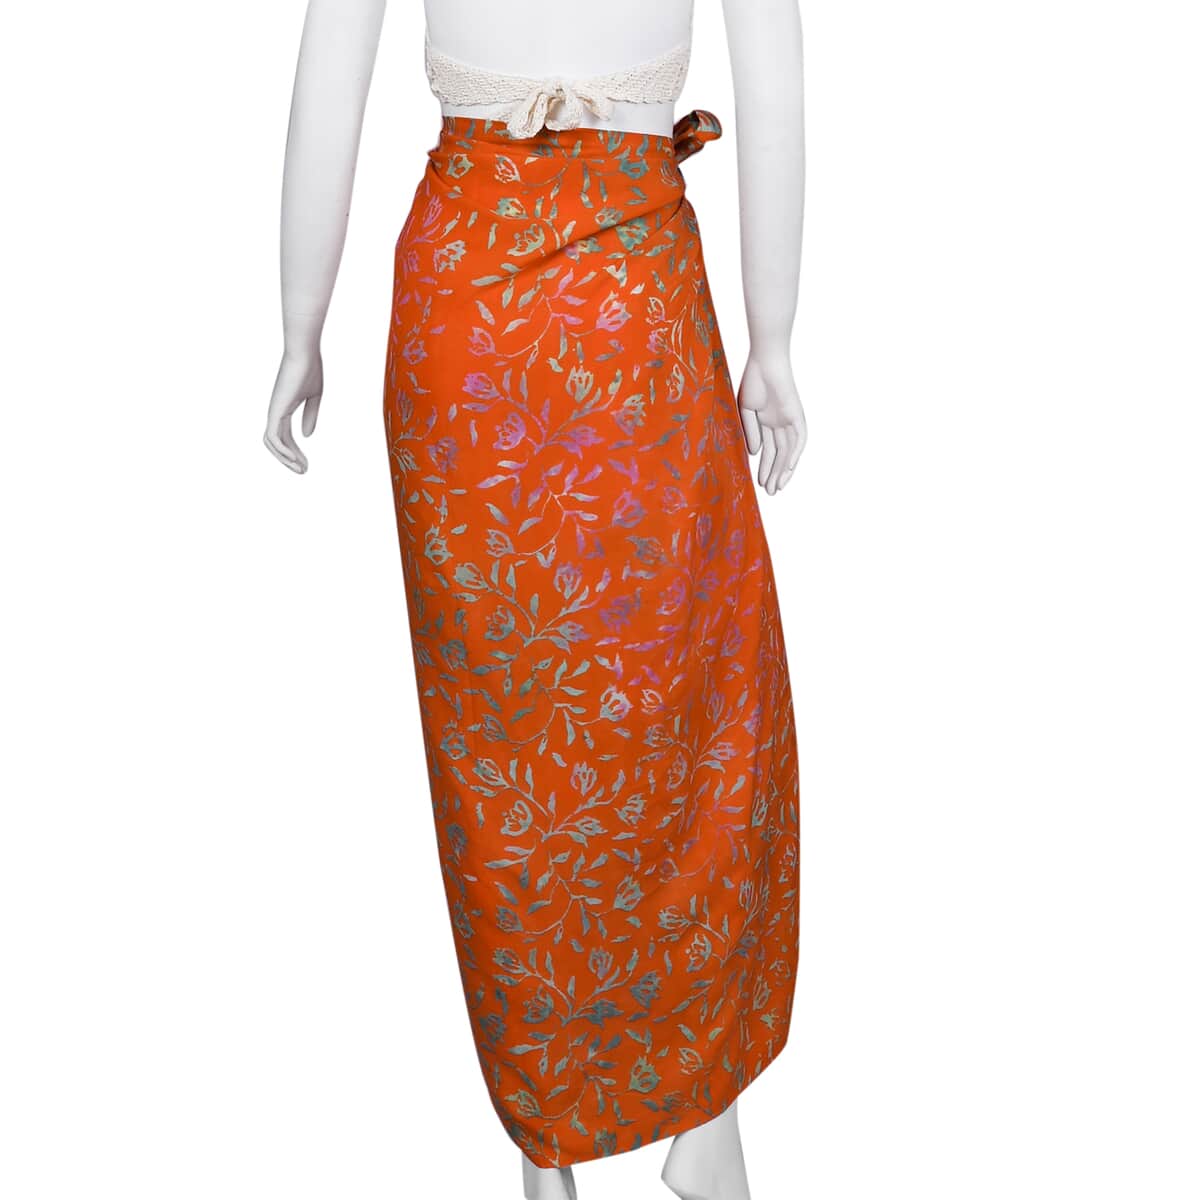 Handmade Golden Orange Floral Motif Pattern 100% Rayon Sarong | Women's Saron Wrap | Sarong Skirt | Beach Sarong Cover Up image number 2